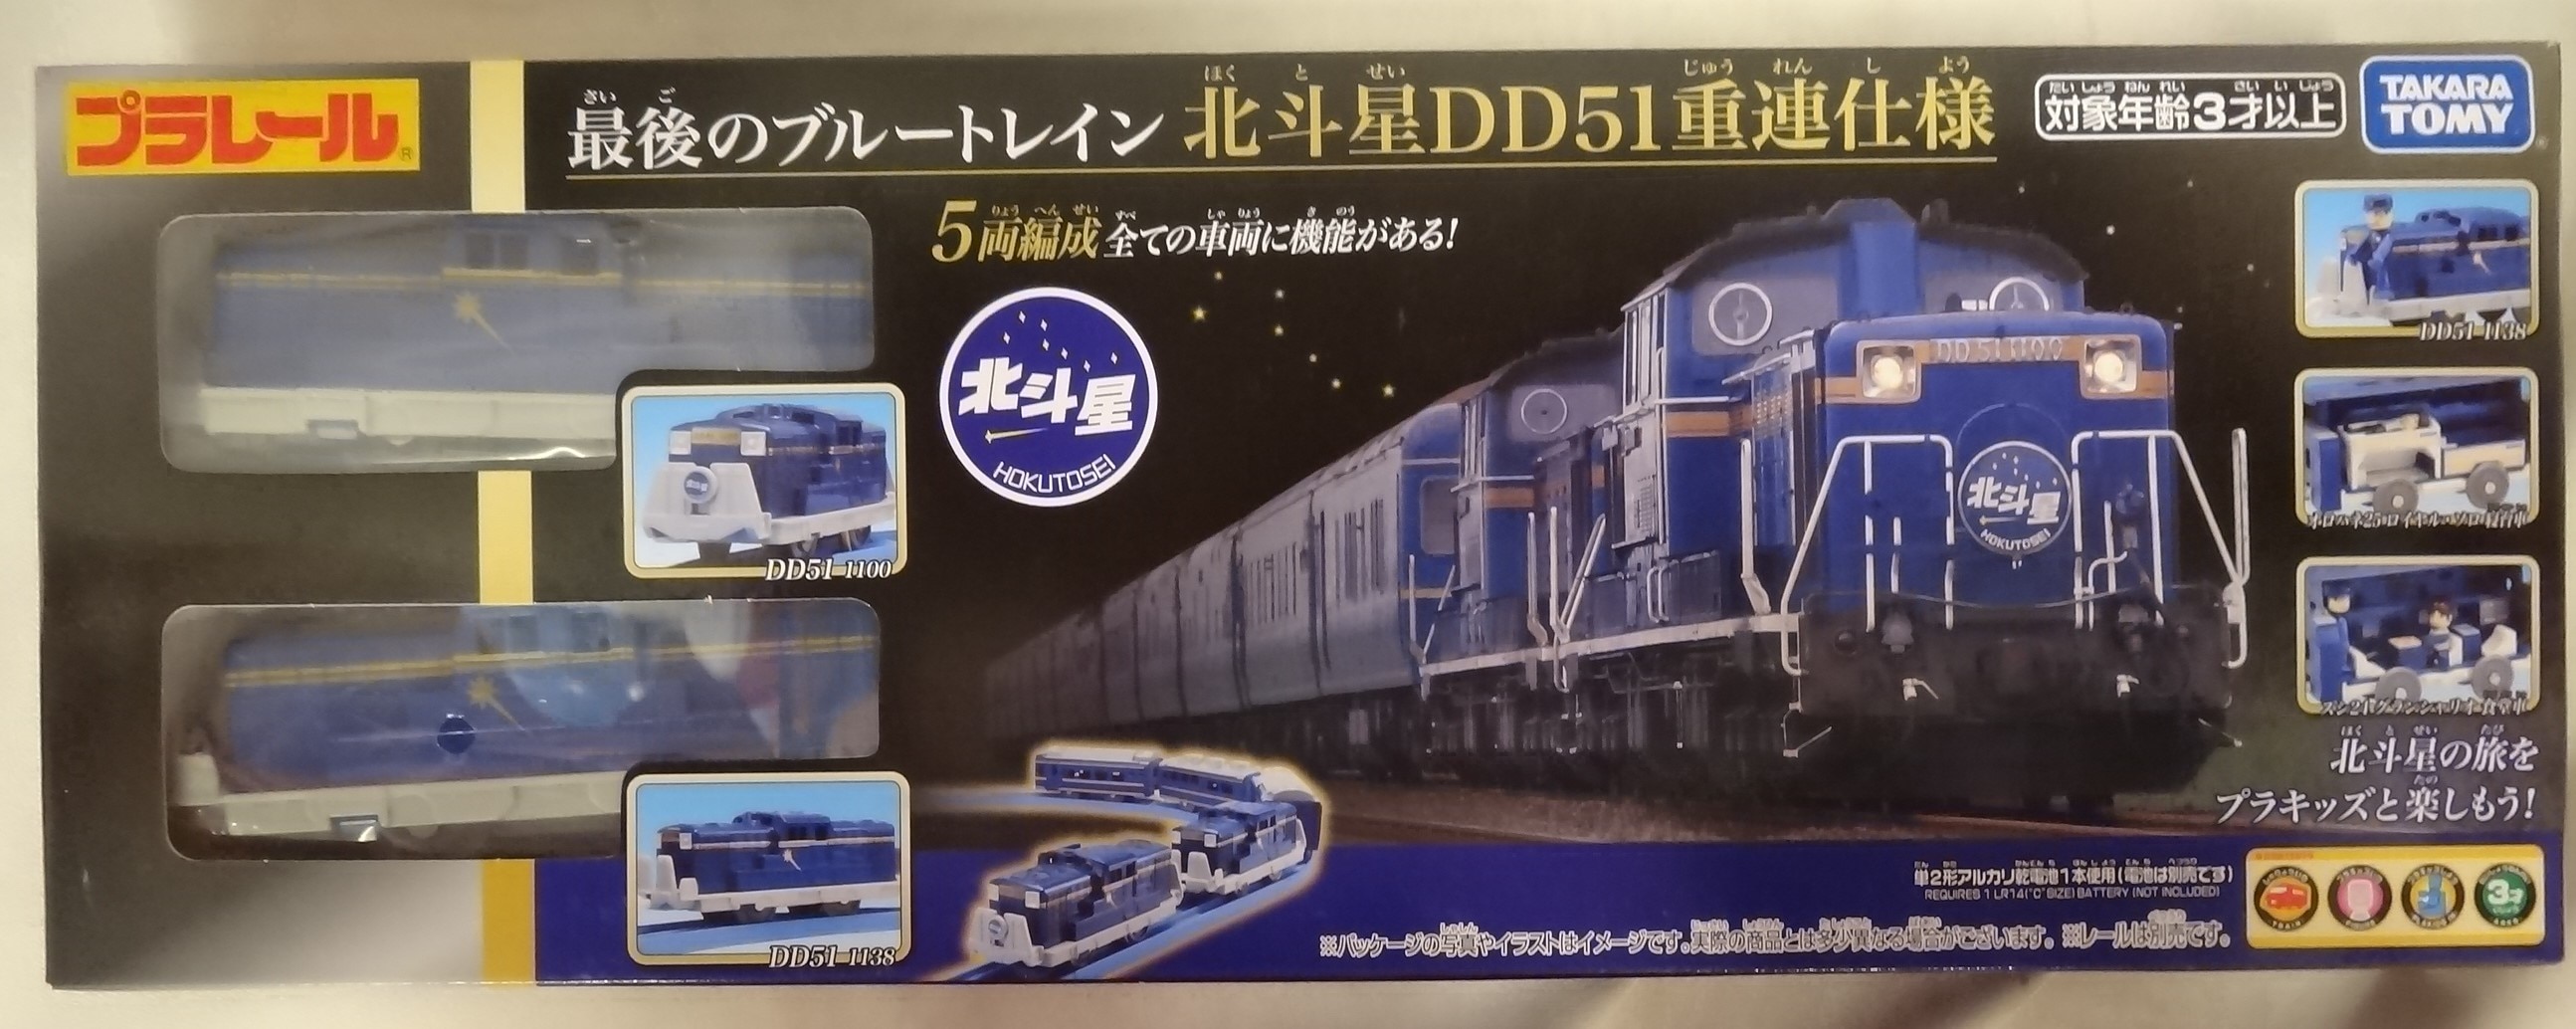 【爆買い通販】DD51重連ブルトレセット(プラレール) 鉄道玩具